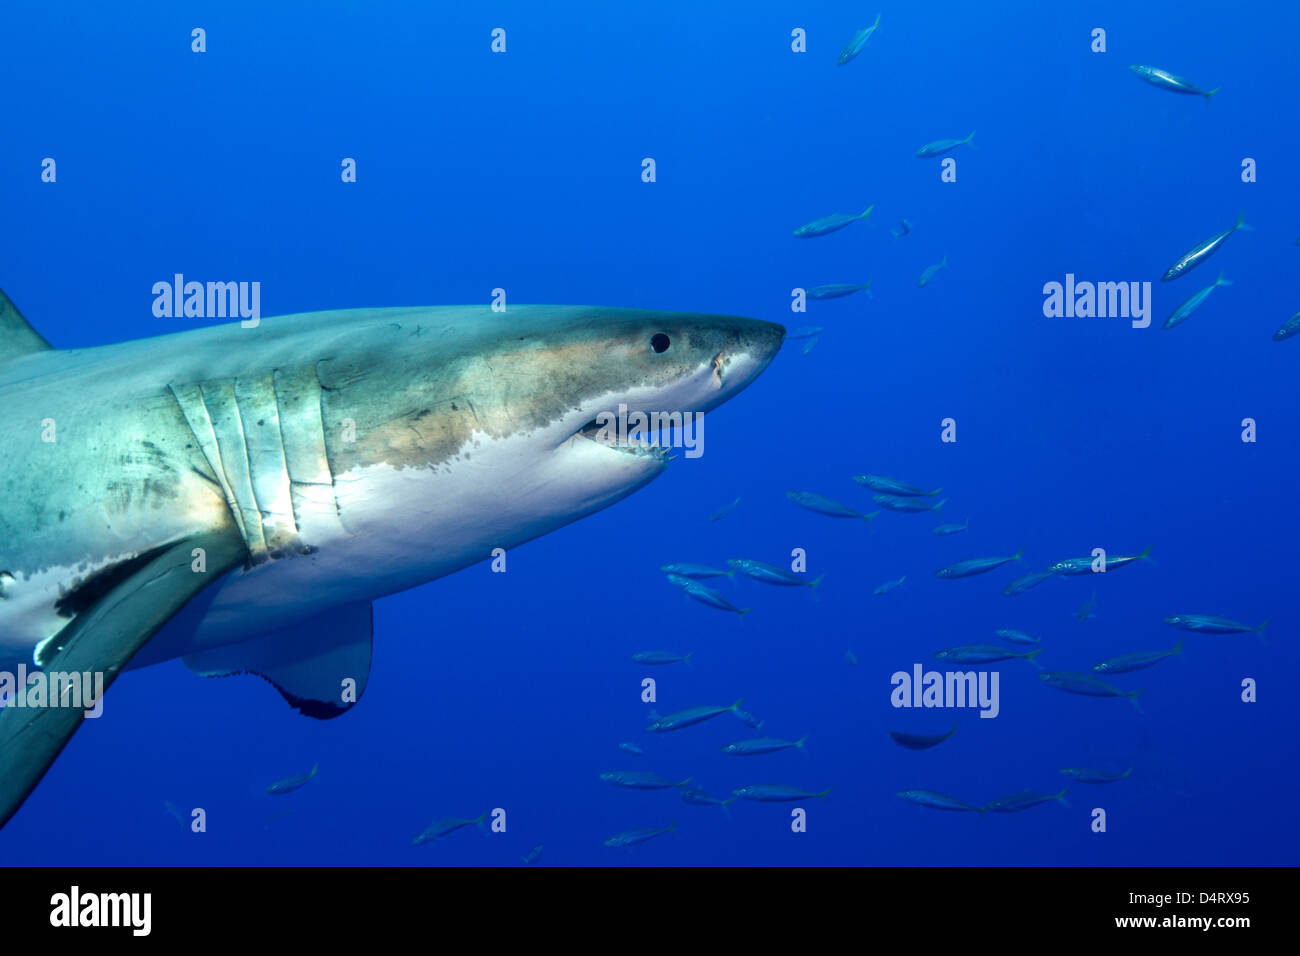 Great white shark Stock Photo